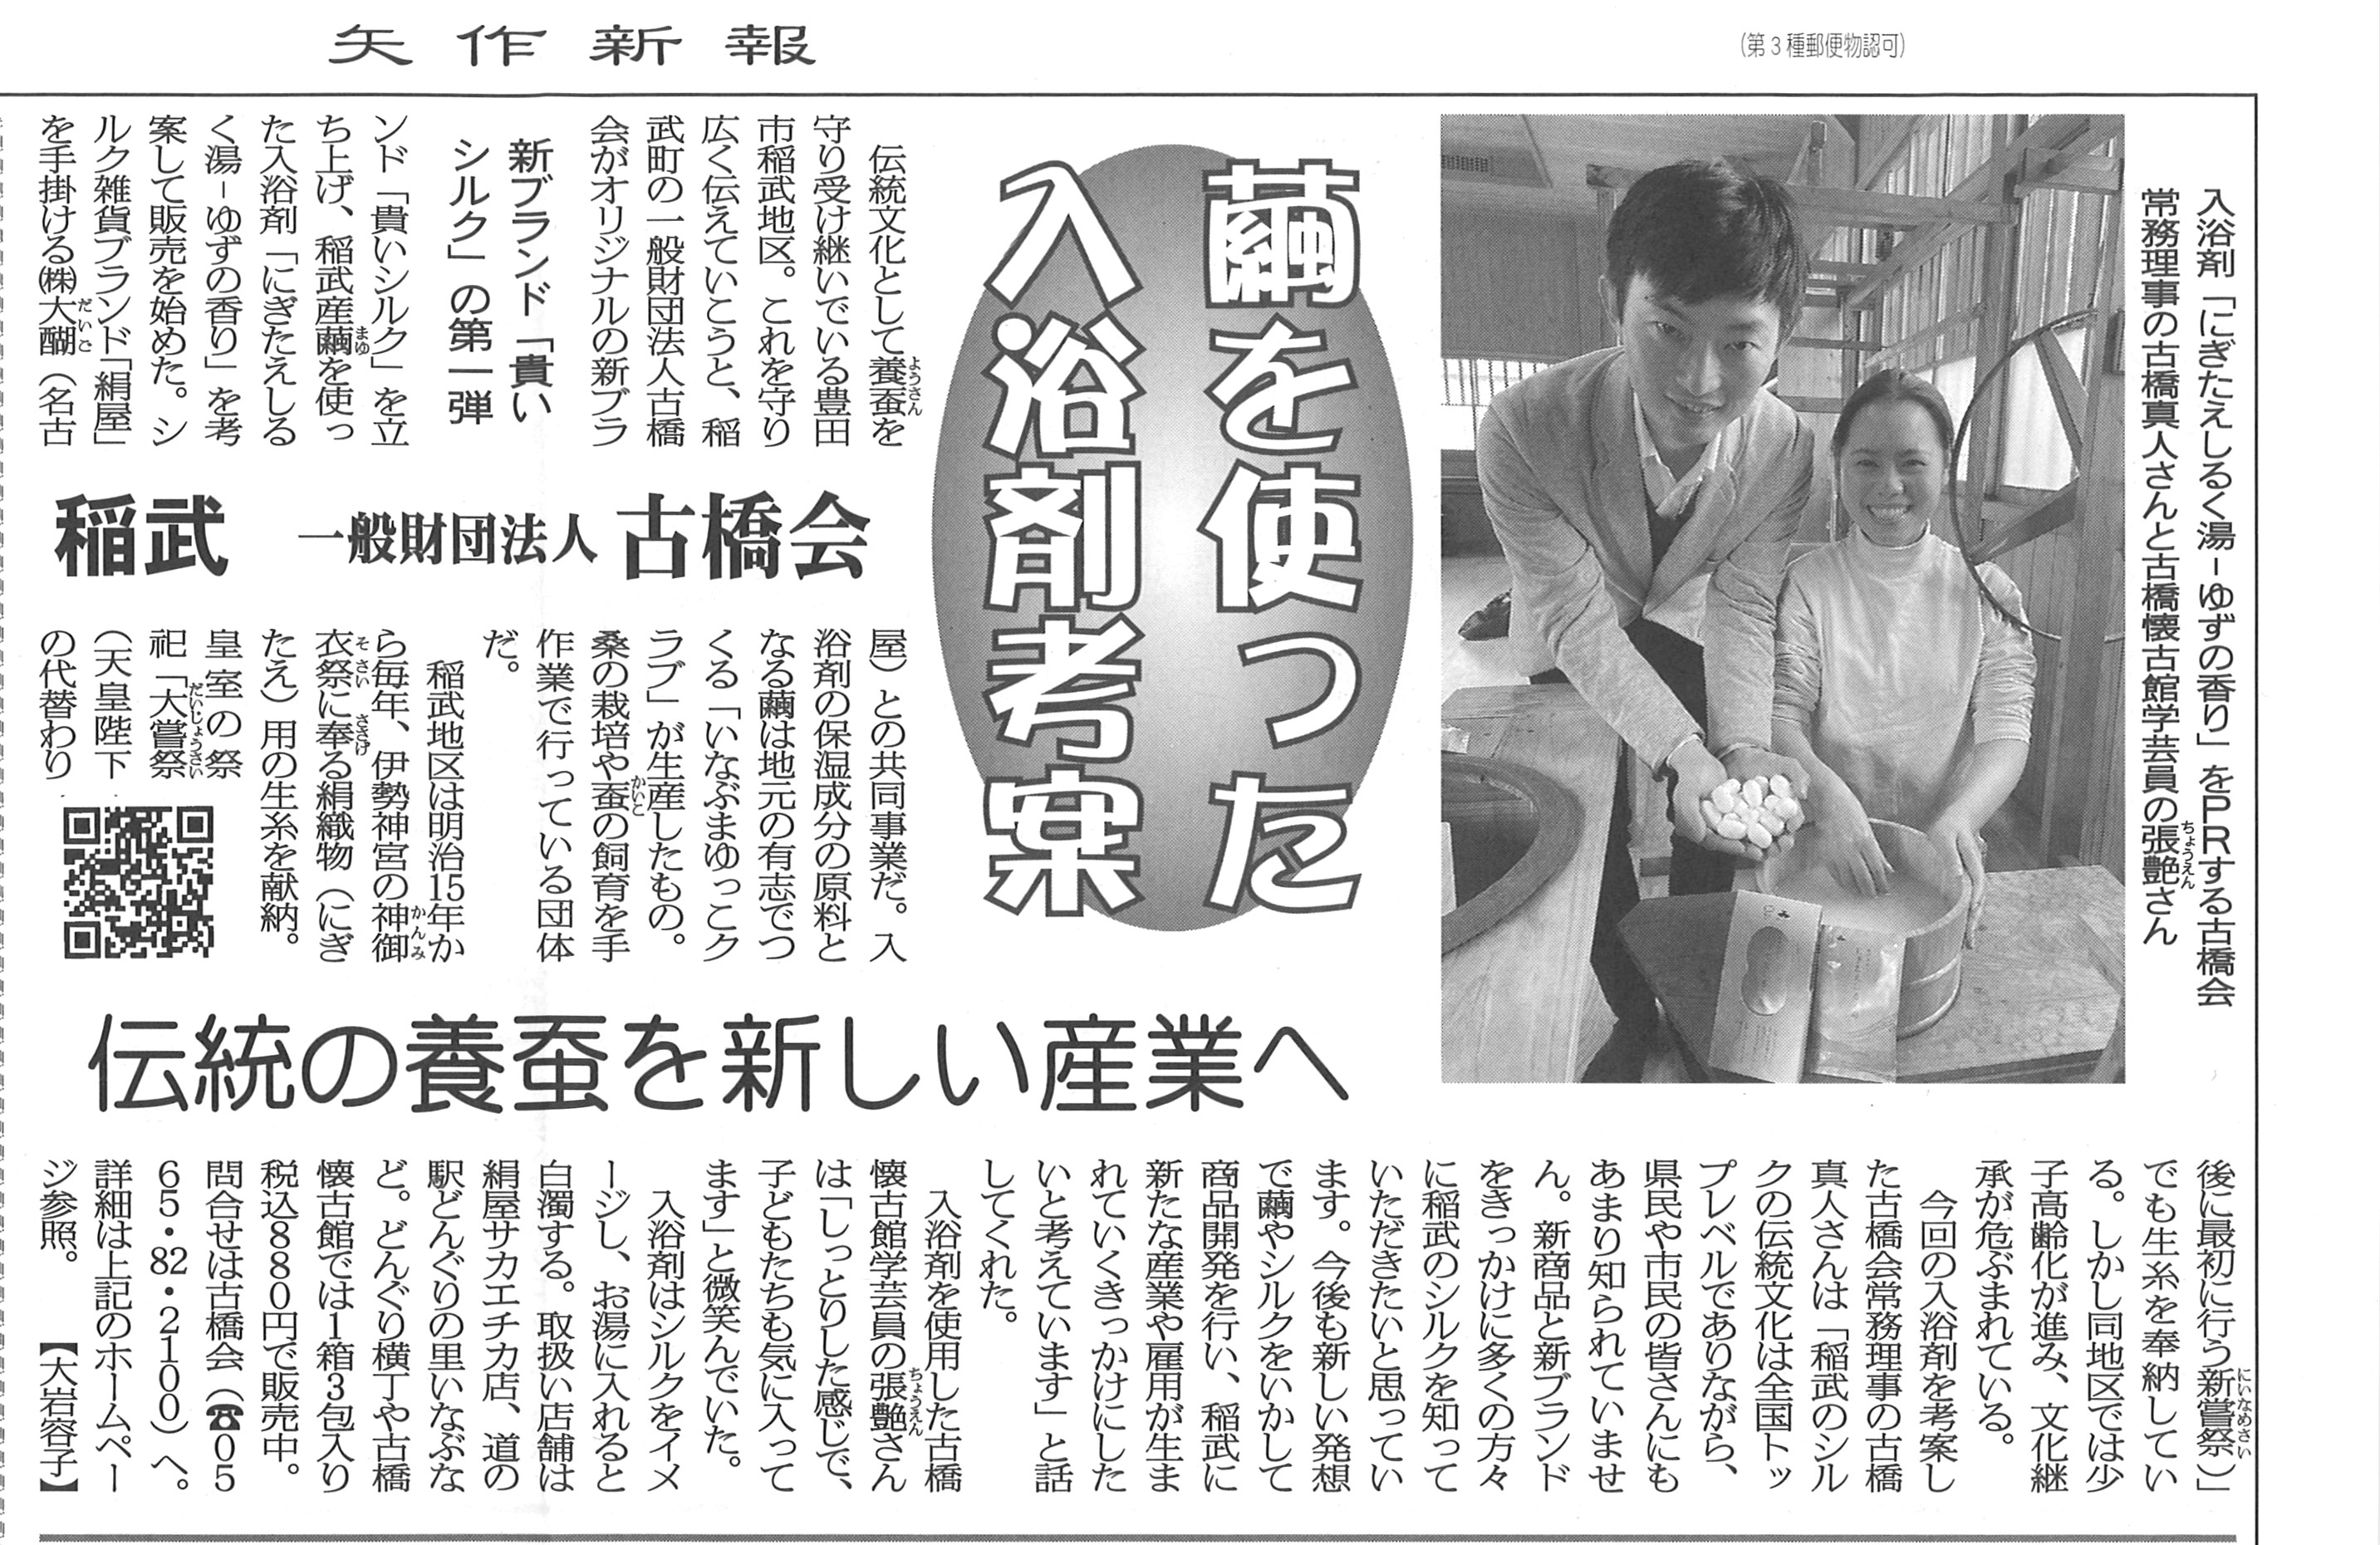 『繭を使った入浴剤考案』3月17日矢作新報様に掲載していただきました🌸